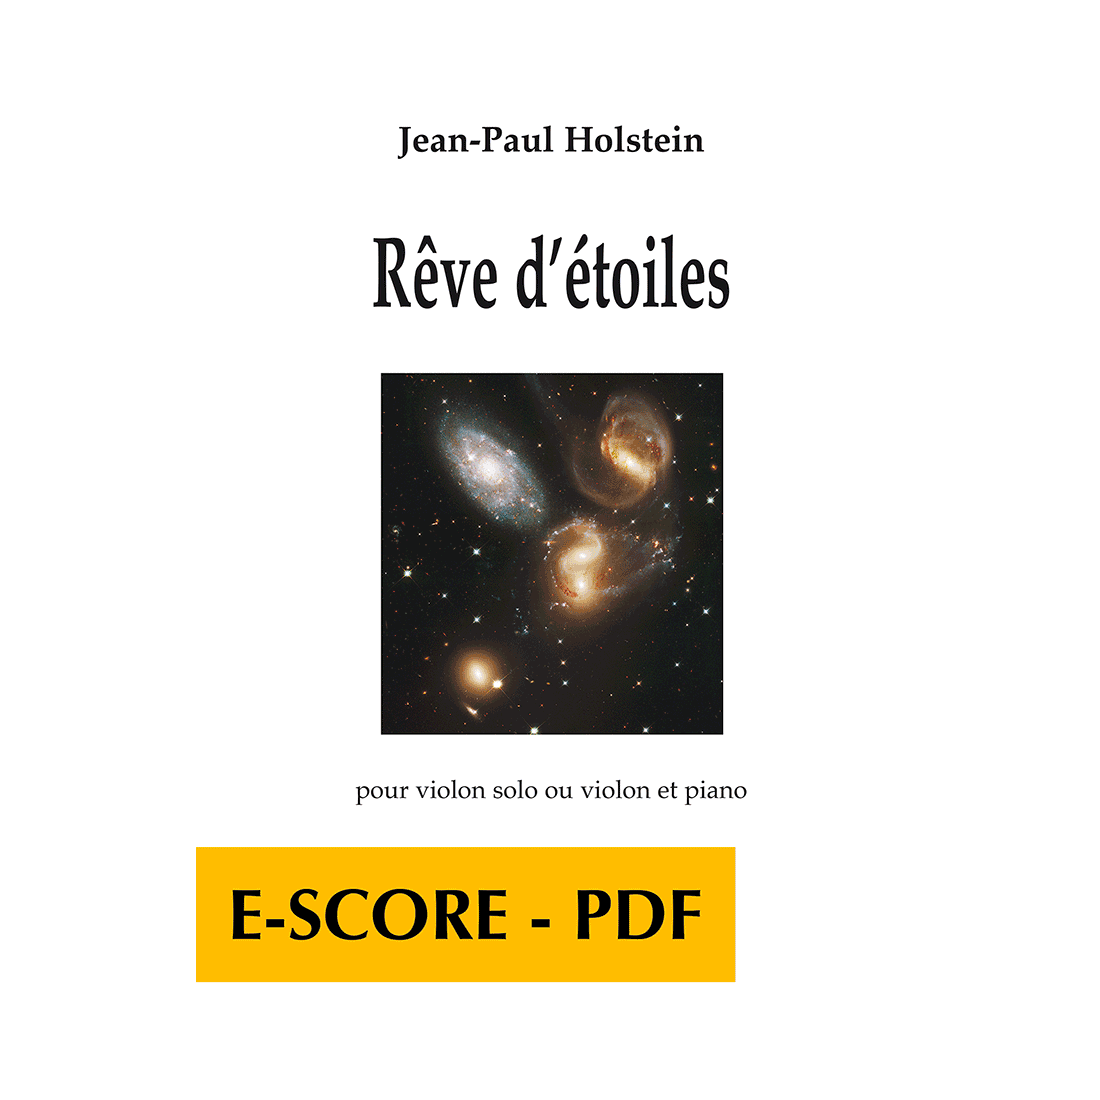 Rêve d'étoiles for violin solo or violin and piano - E-score PDF